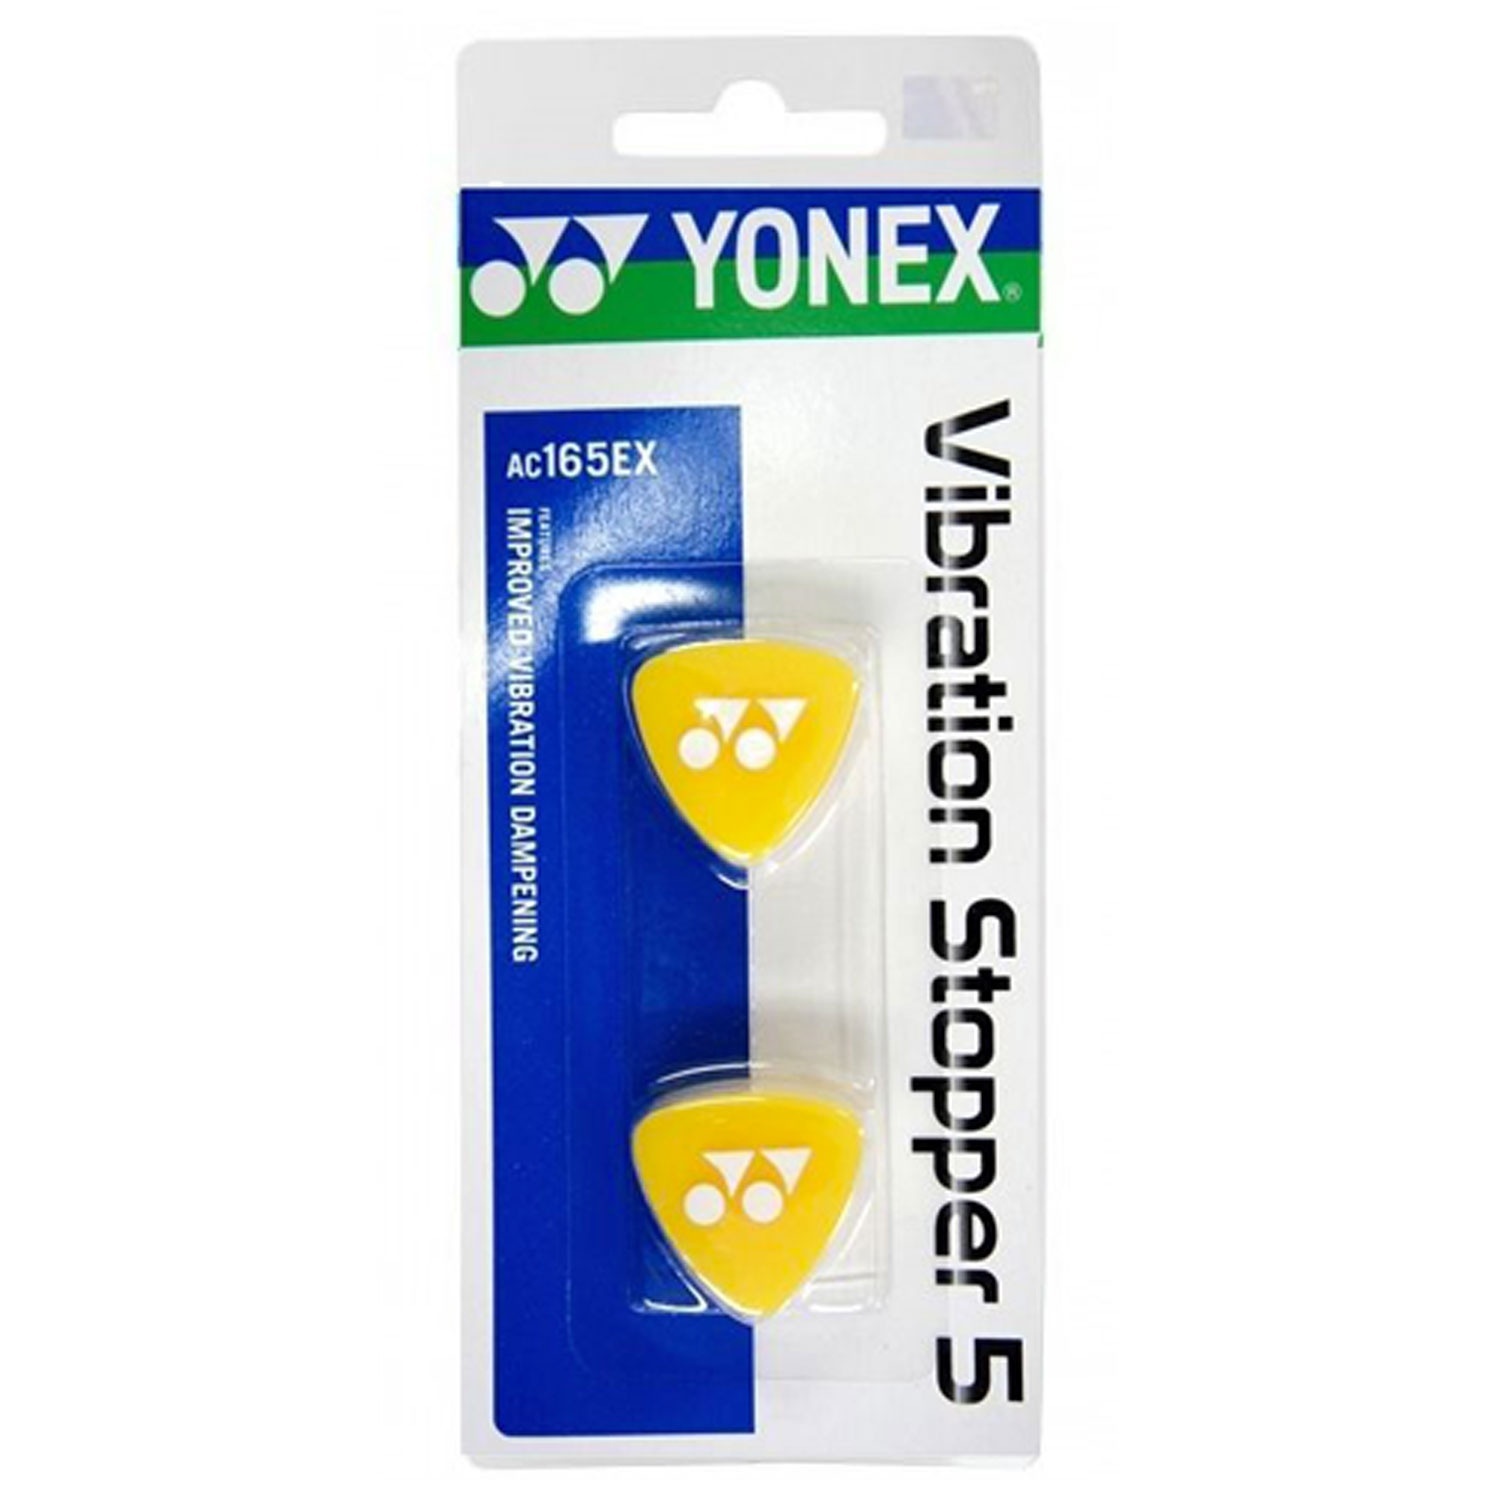 Yonex Vibration Stopper Yellow